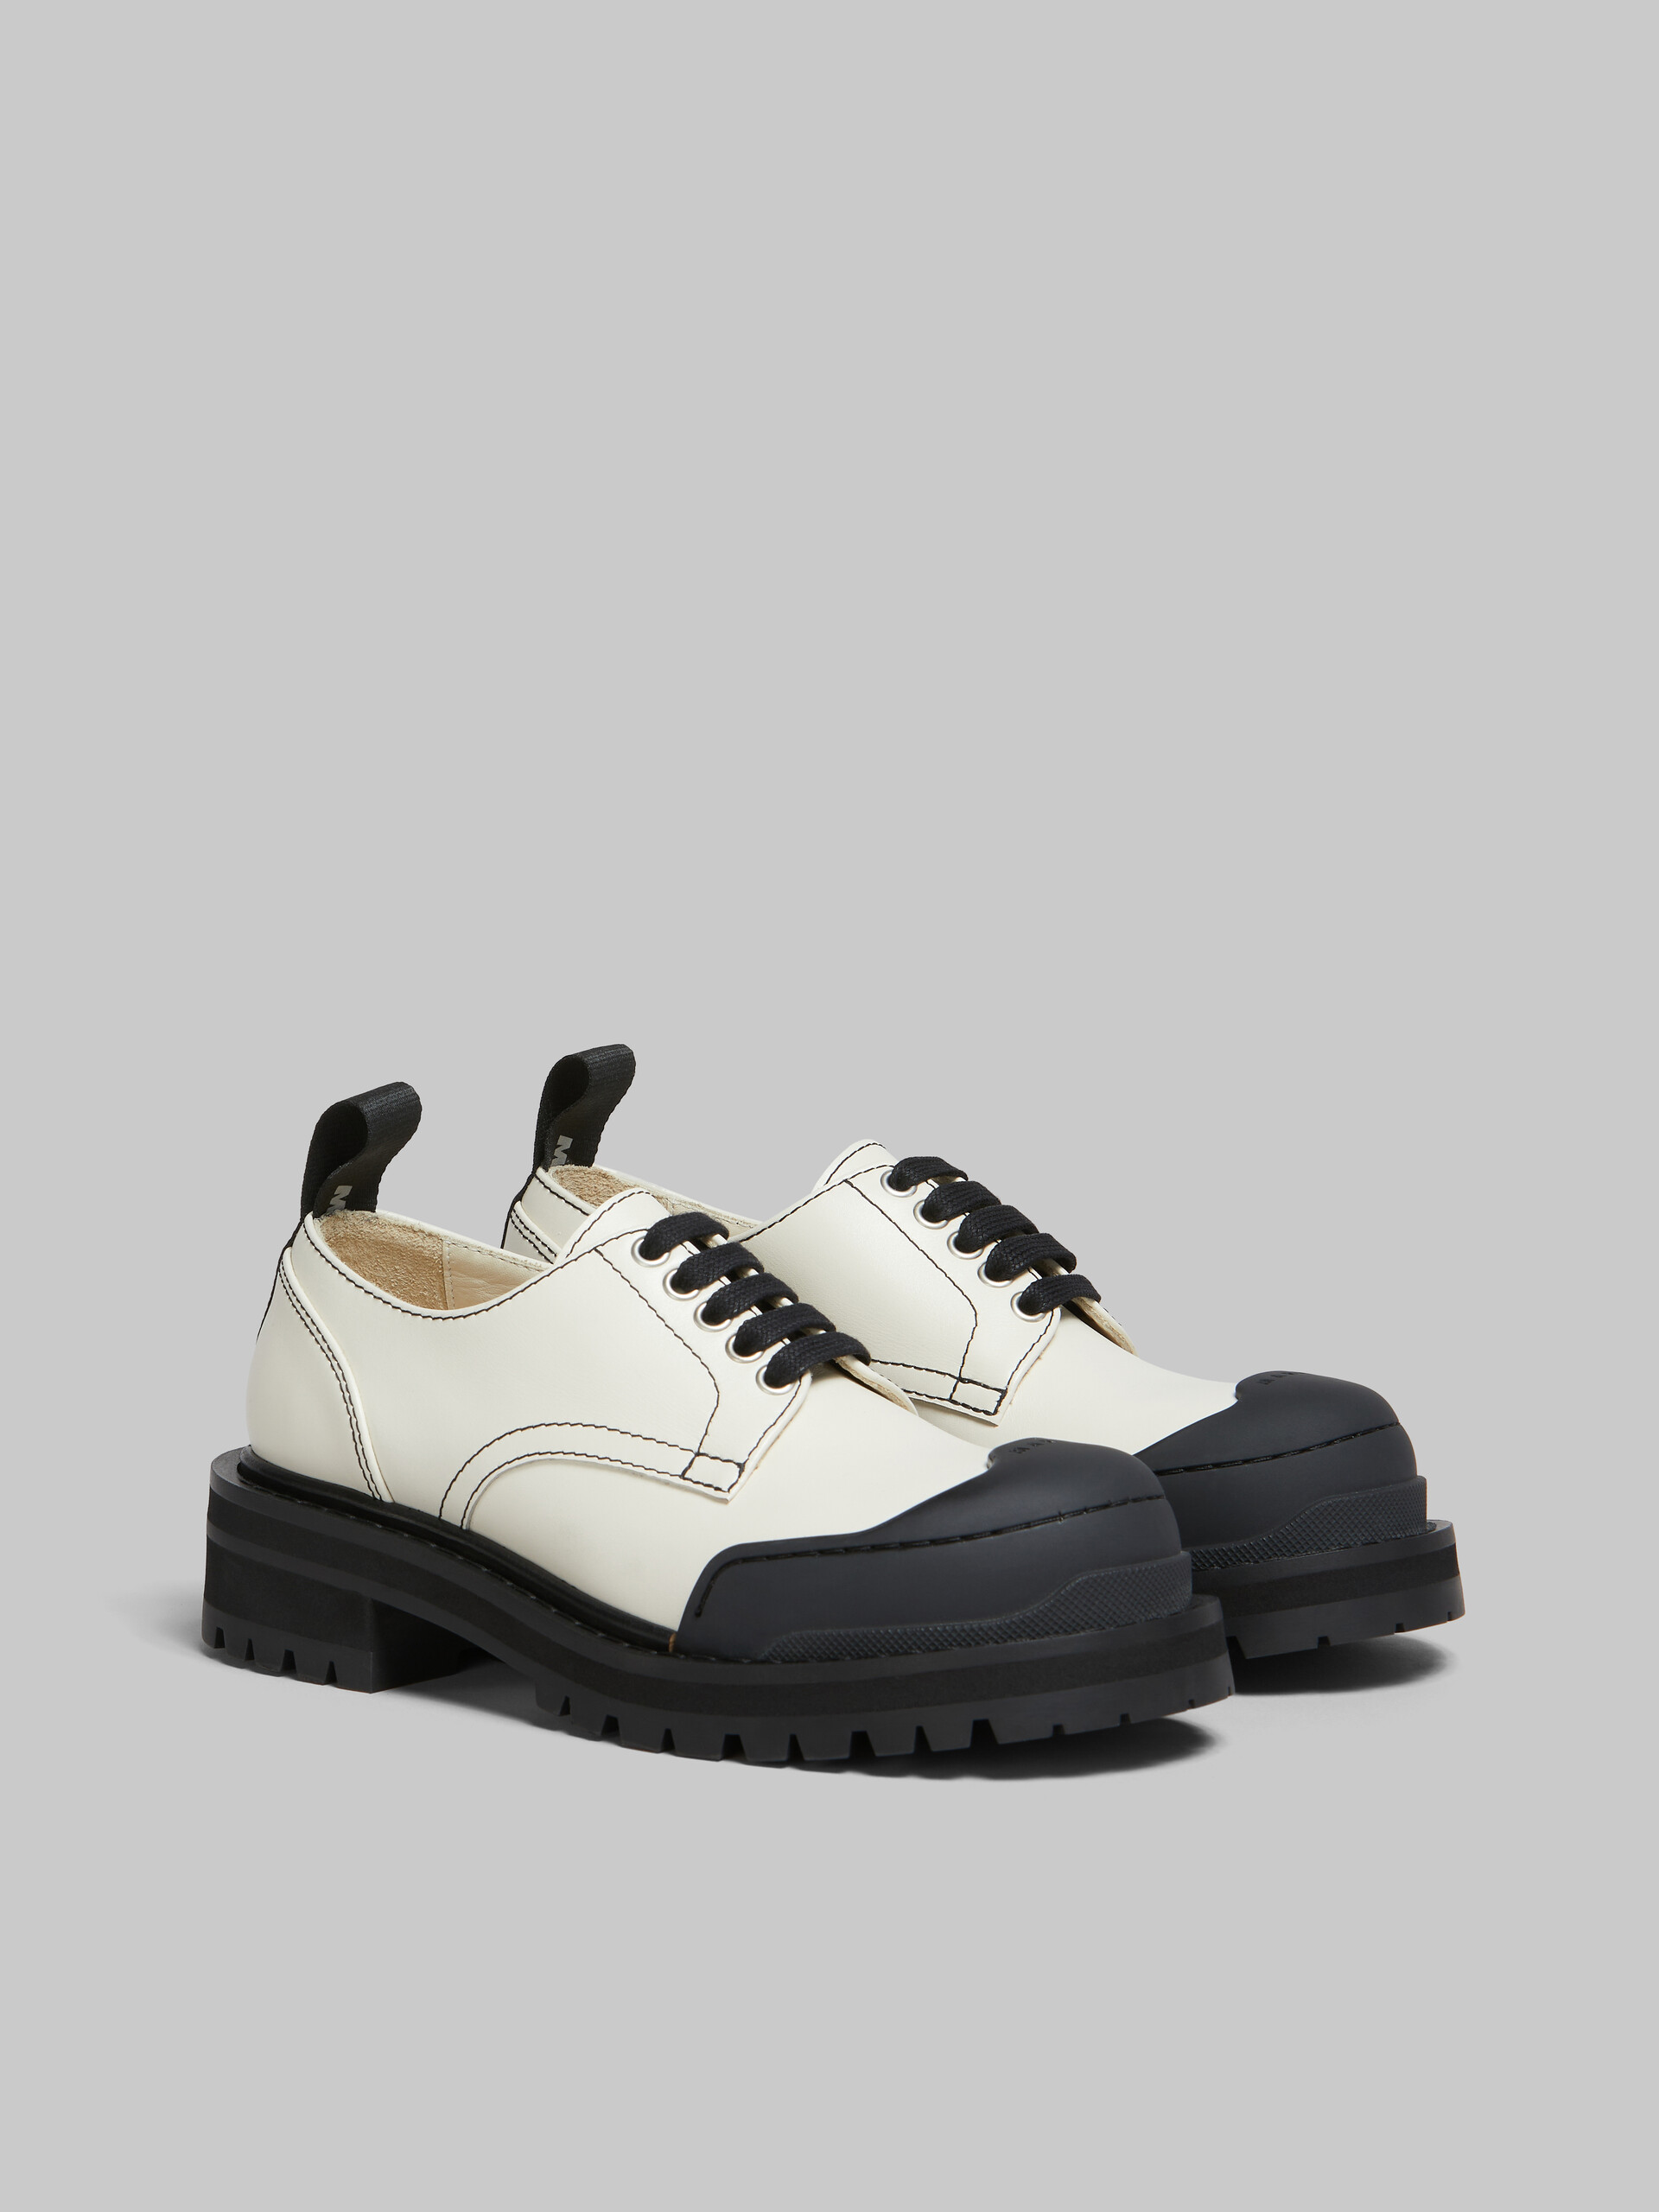 Zapato Derby Dada Army de piel blanca - Zapatos con cordones - Image 2